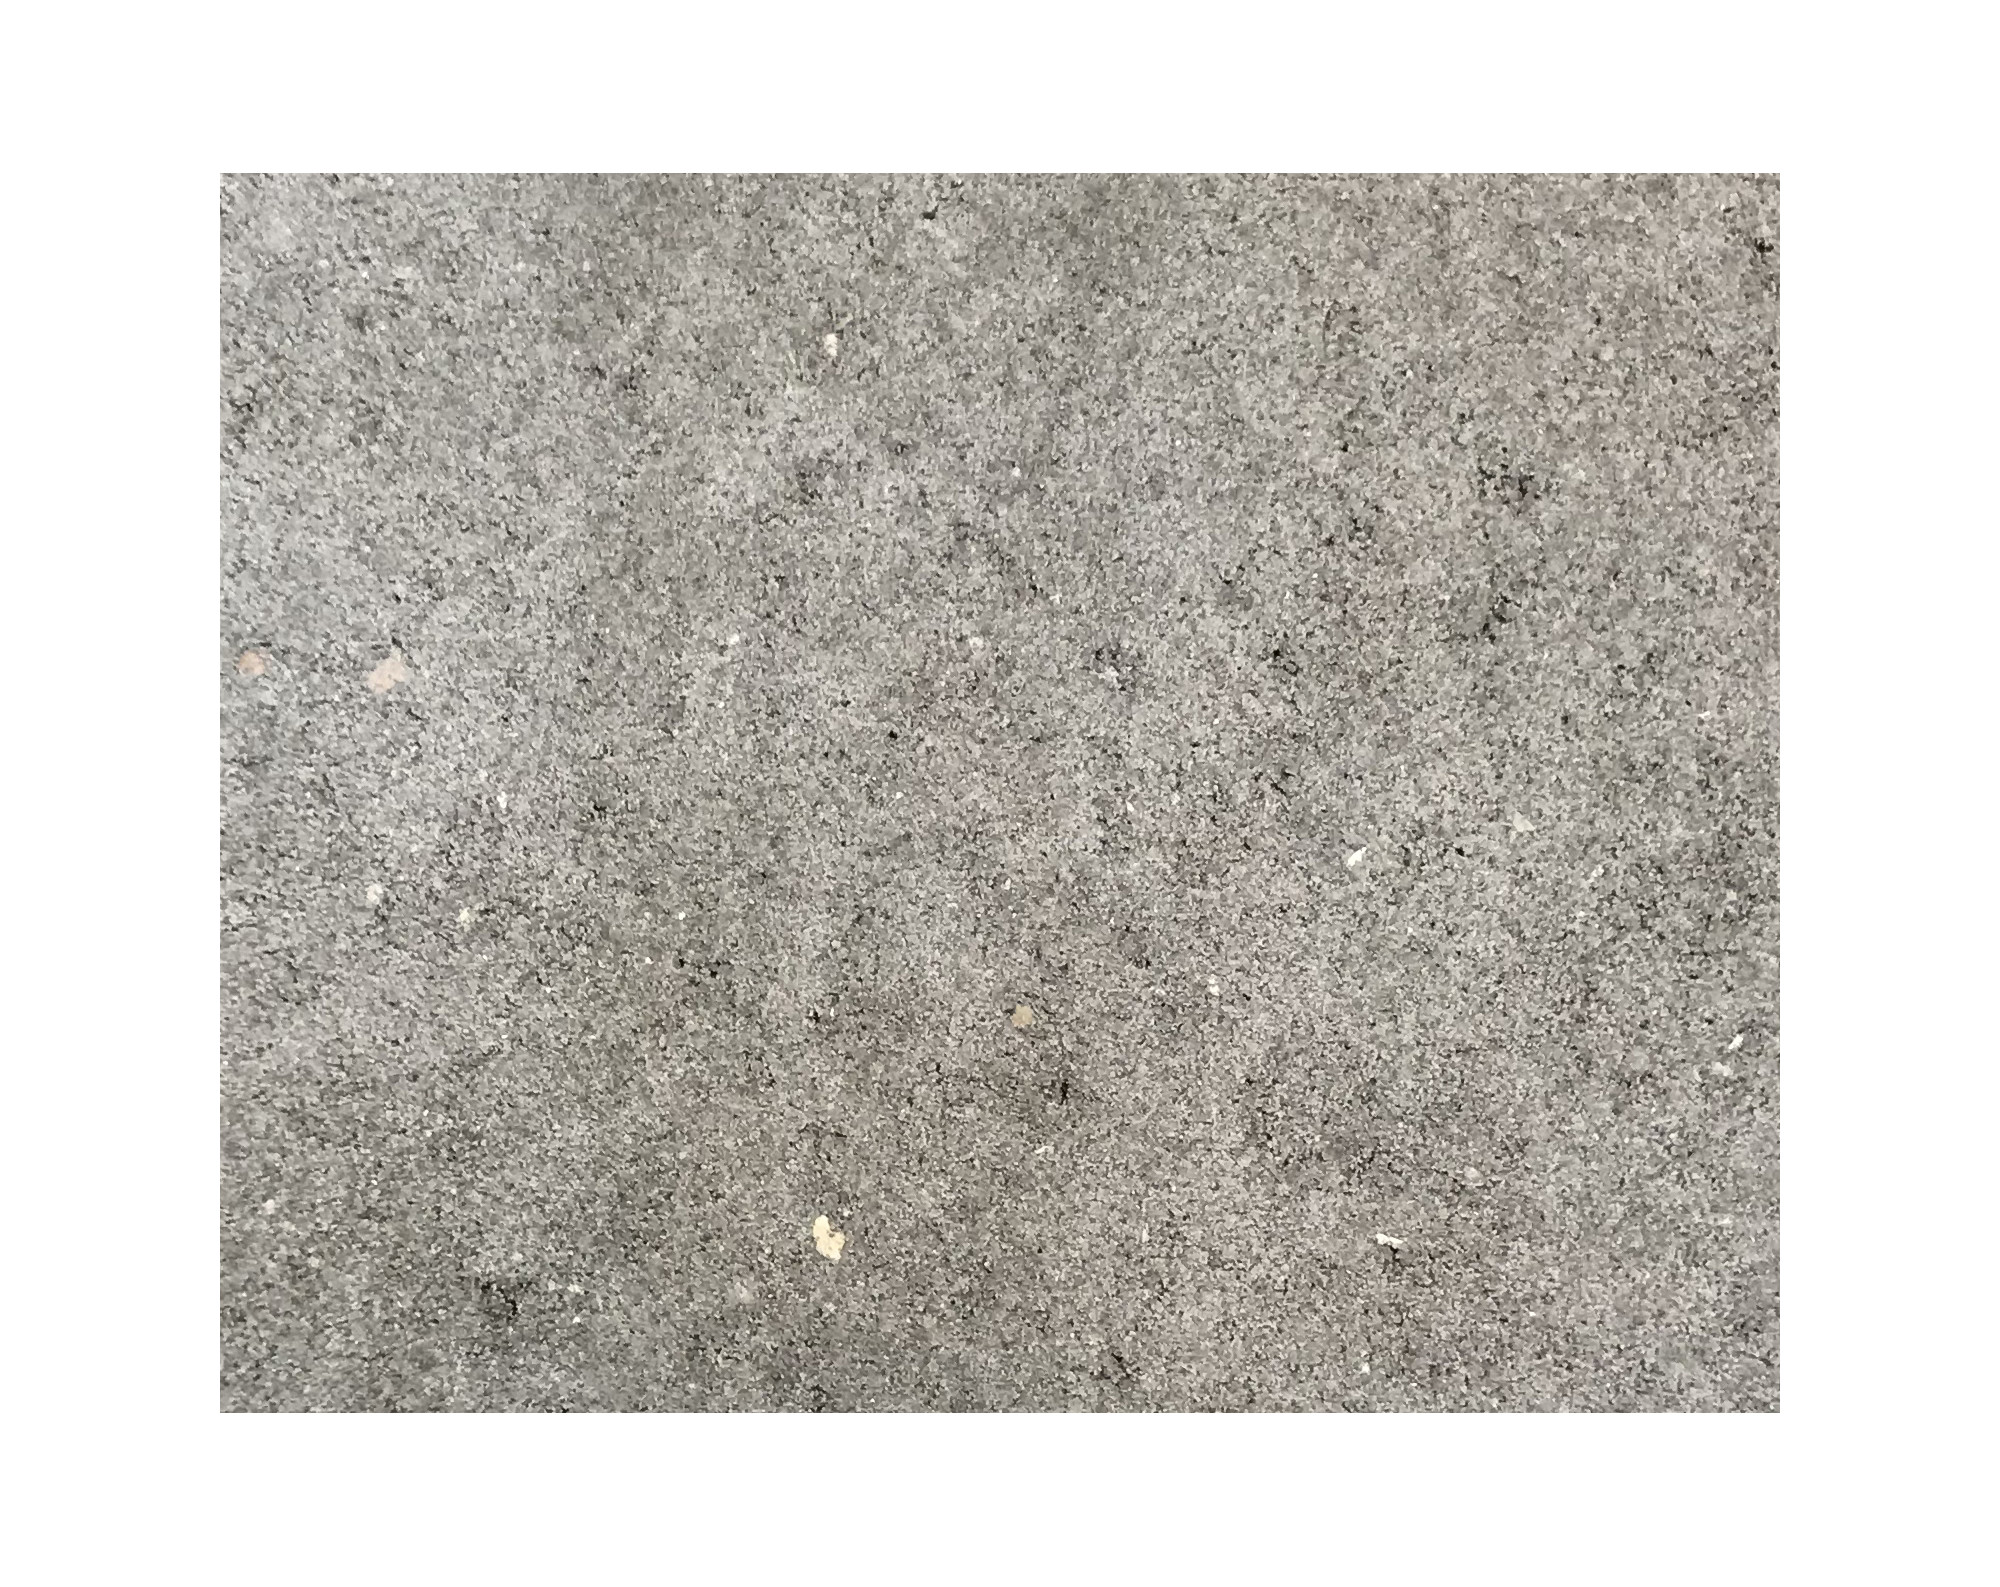 Harmo roc athenset, rustica-serie, ovaal d:3,50mx6,20m, grijs, beton